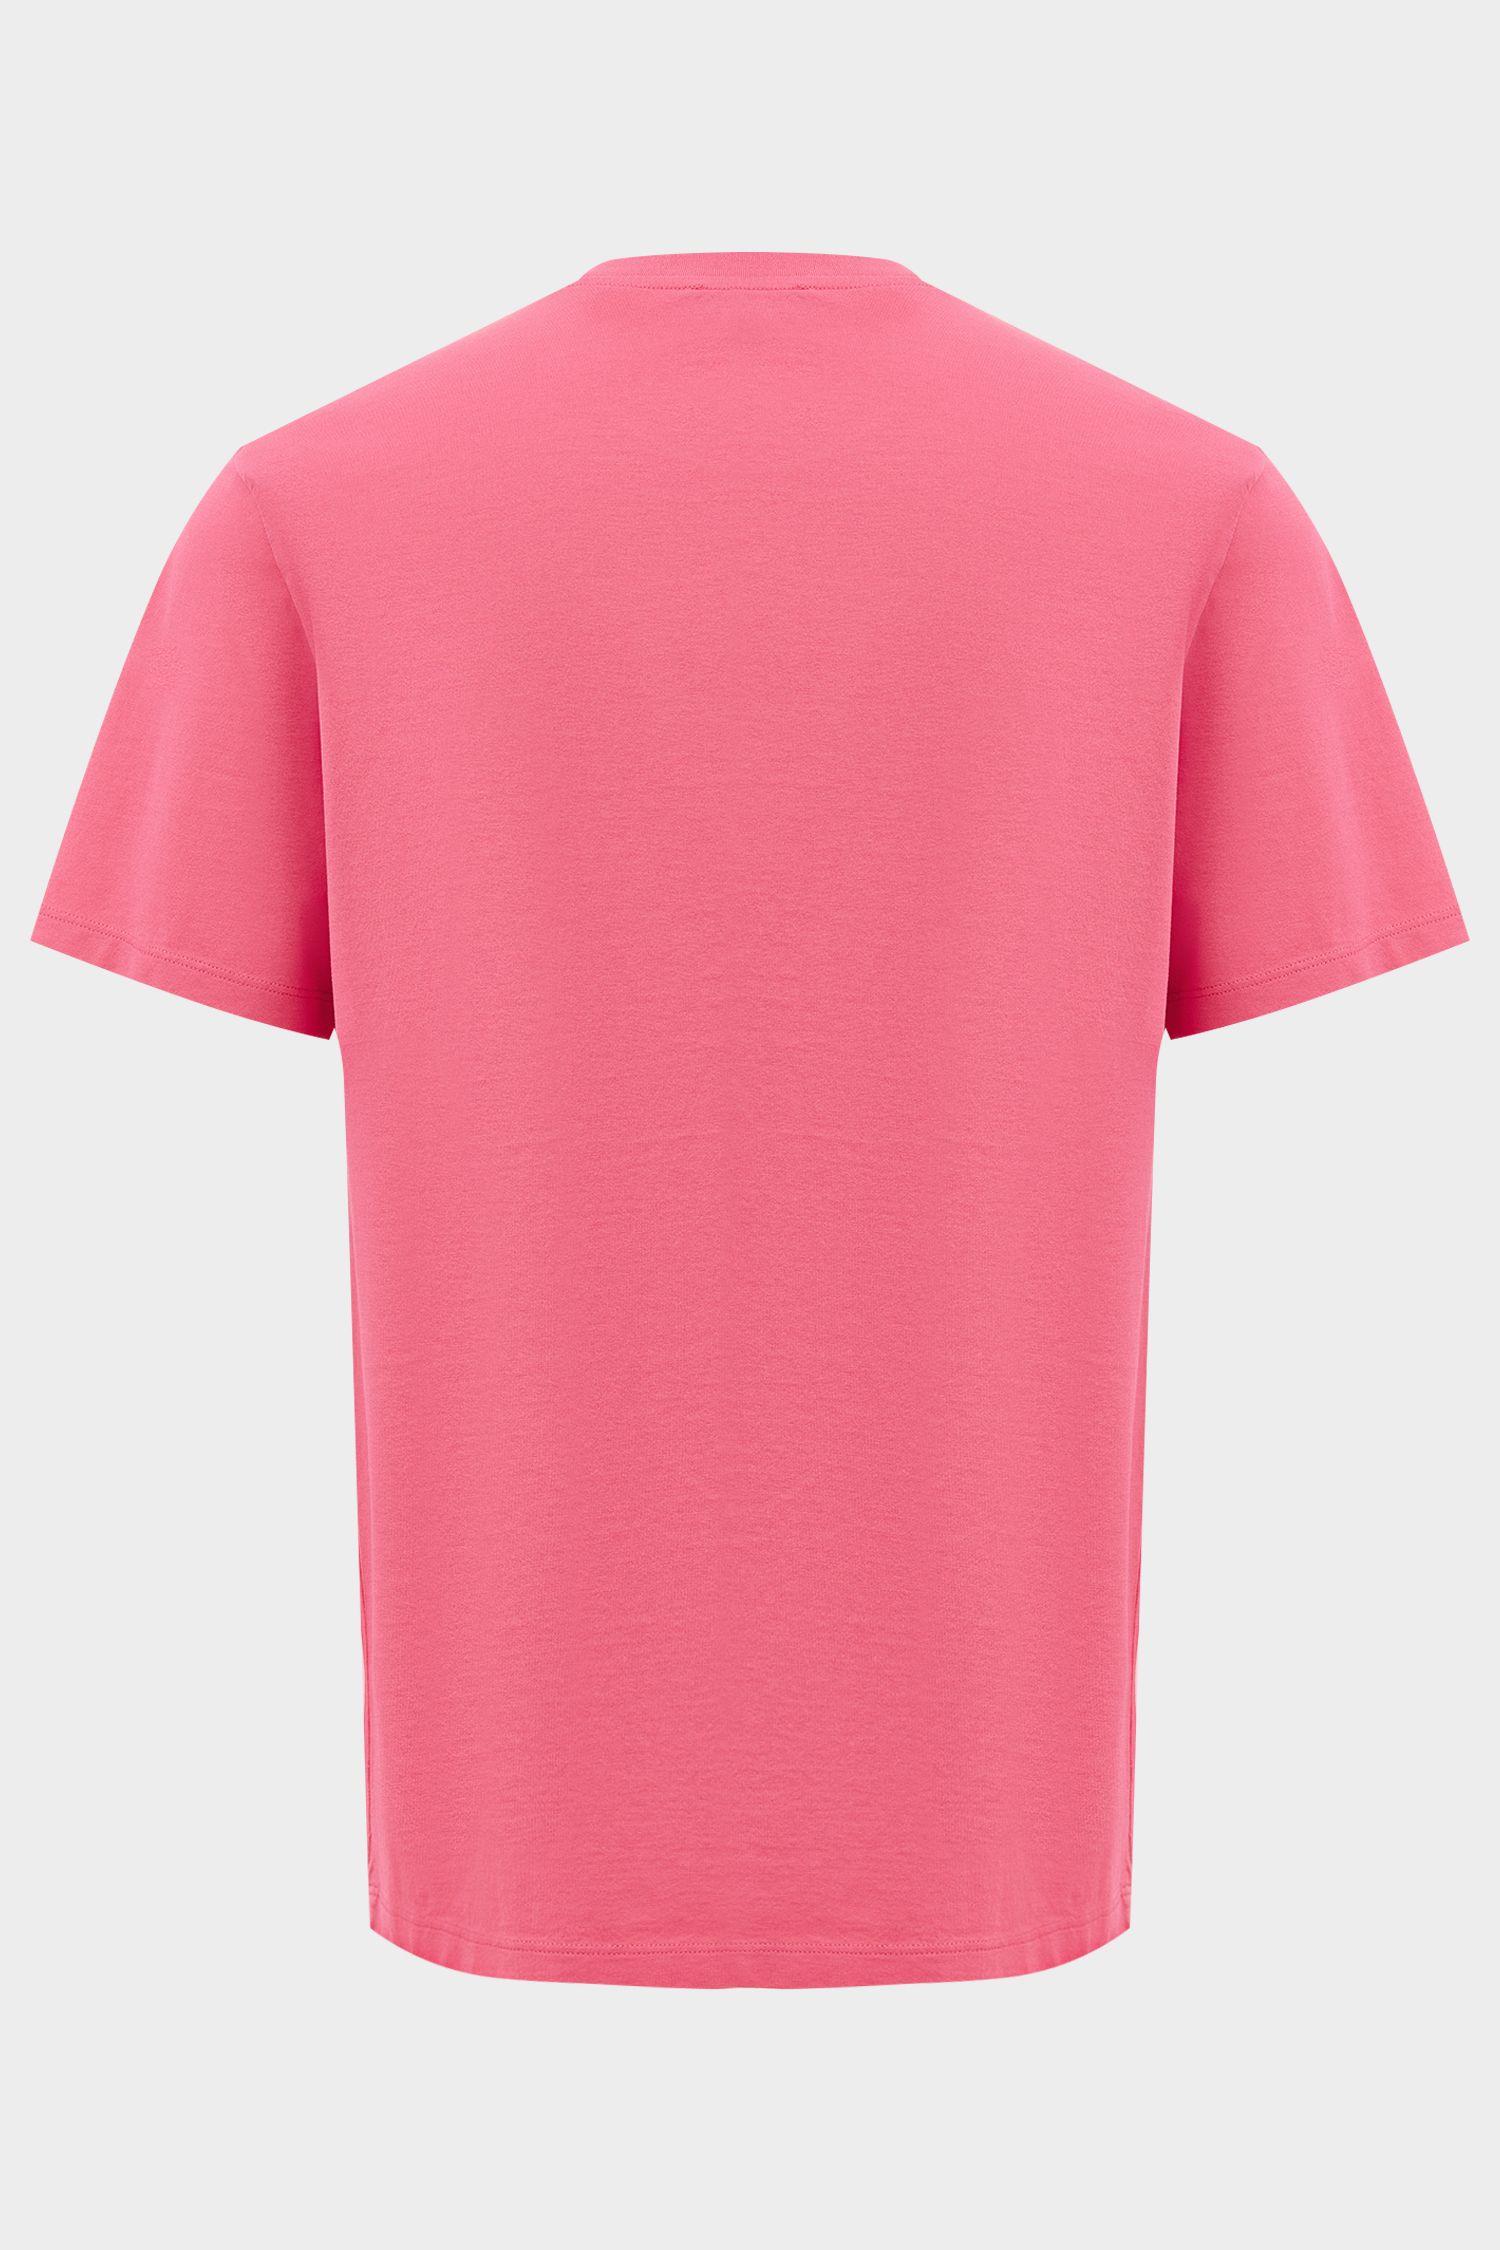 футболка PAOLO ярко-розовый PAOLO_Z20044_540 ,photo 3